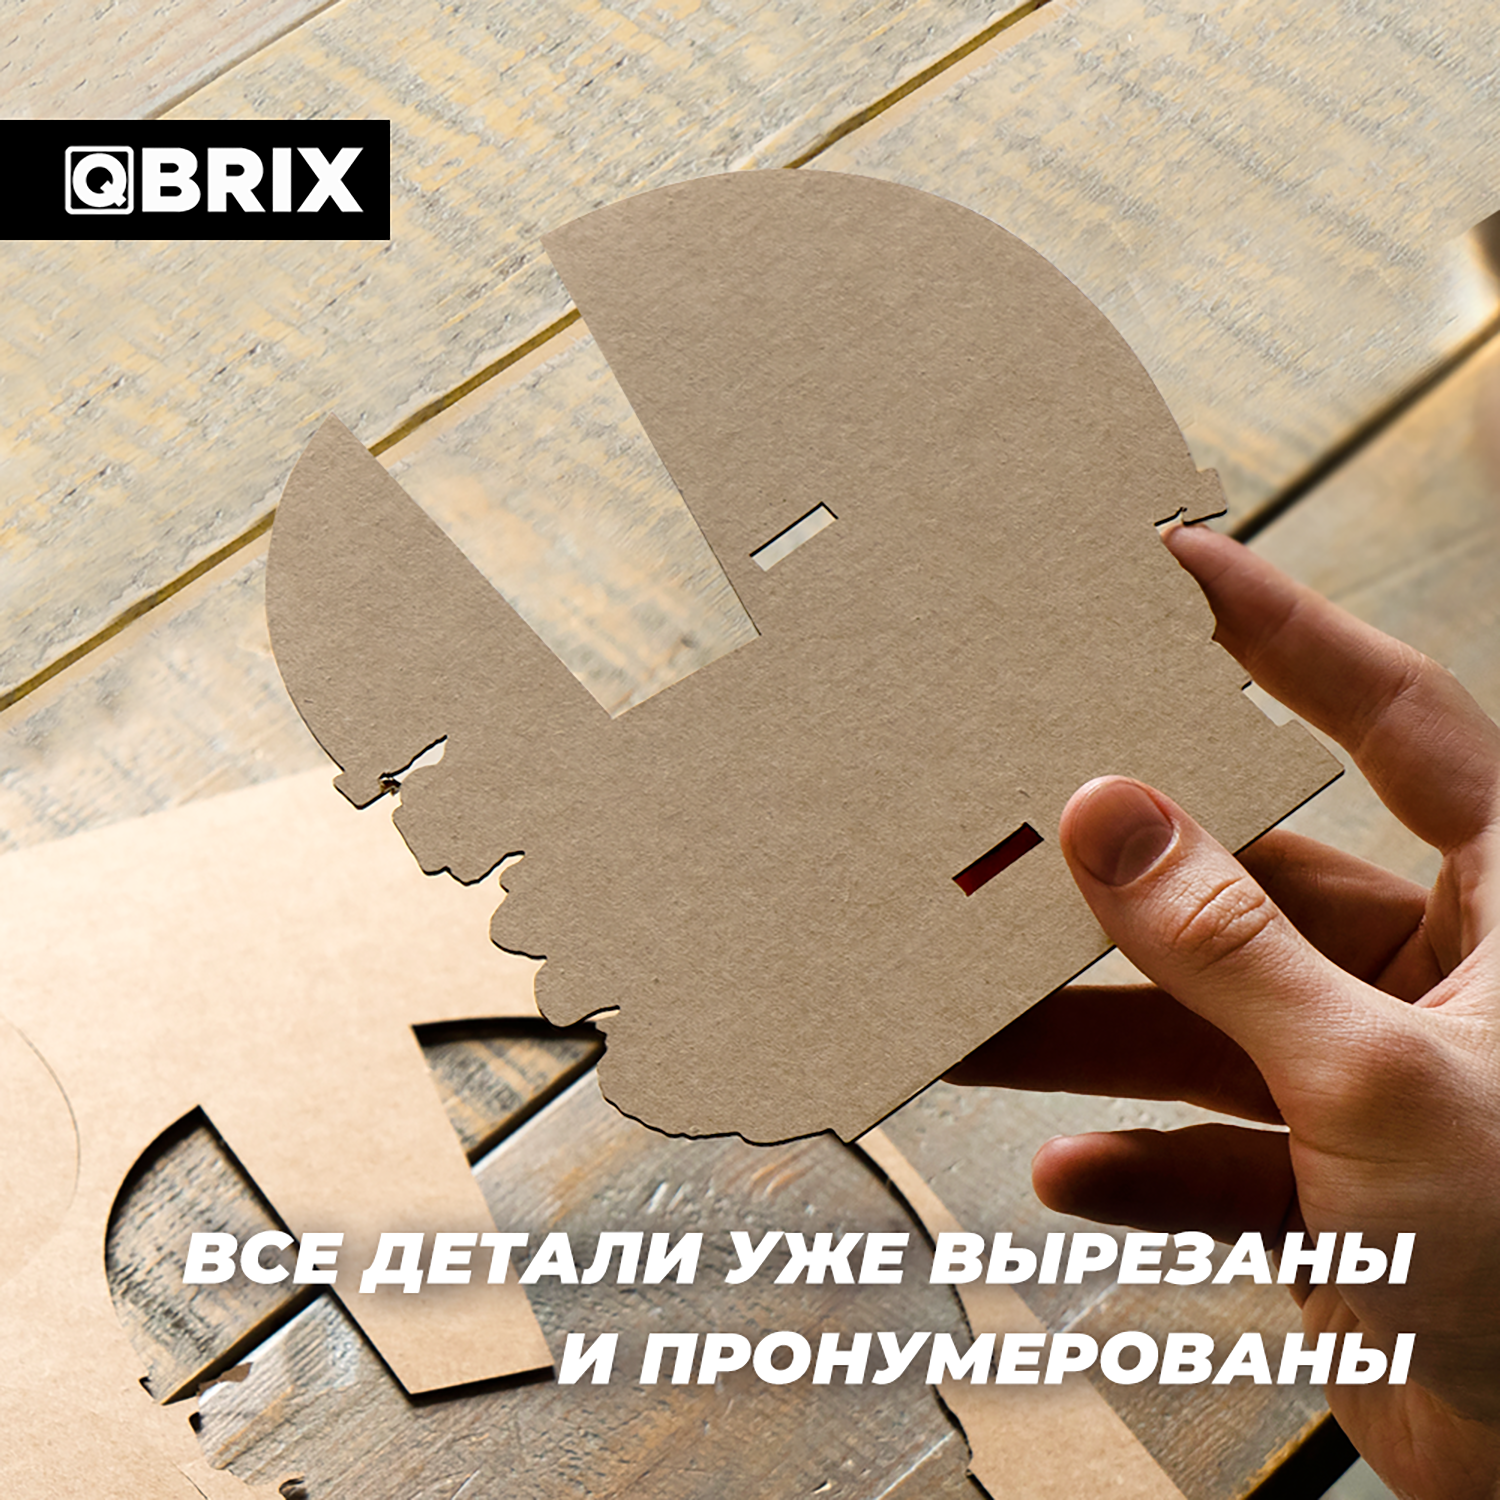 Конструктор QBRIX 3D картонный Бульдог Органайзер 20005 20005 - фото 4